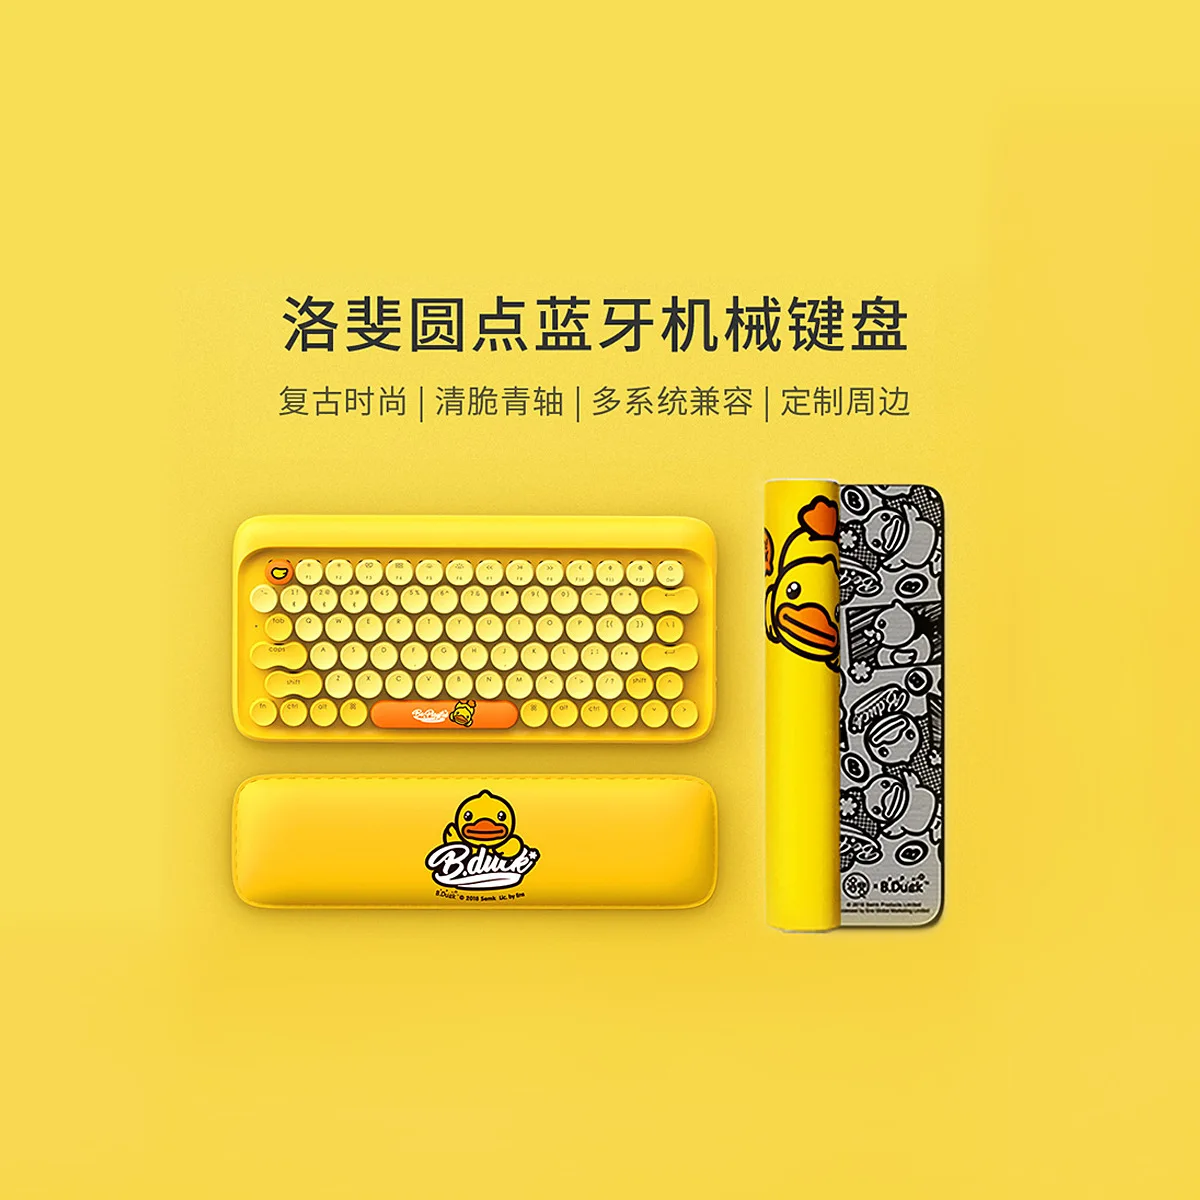 B. Утка маленькая Желтая утка lofree точечная Bluetooth механическая клавиатура Милая Клавиатура Pad Беспроводная Проводная клавиатура